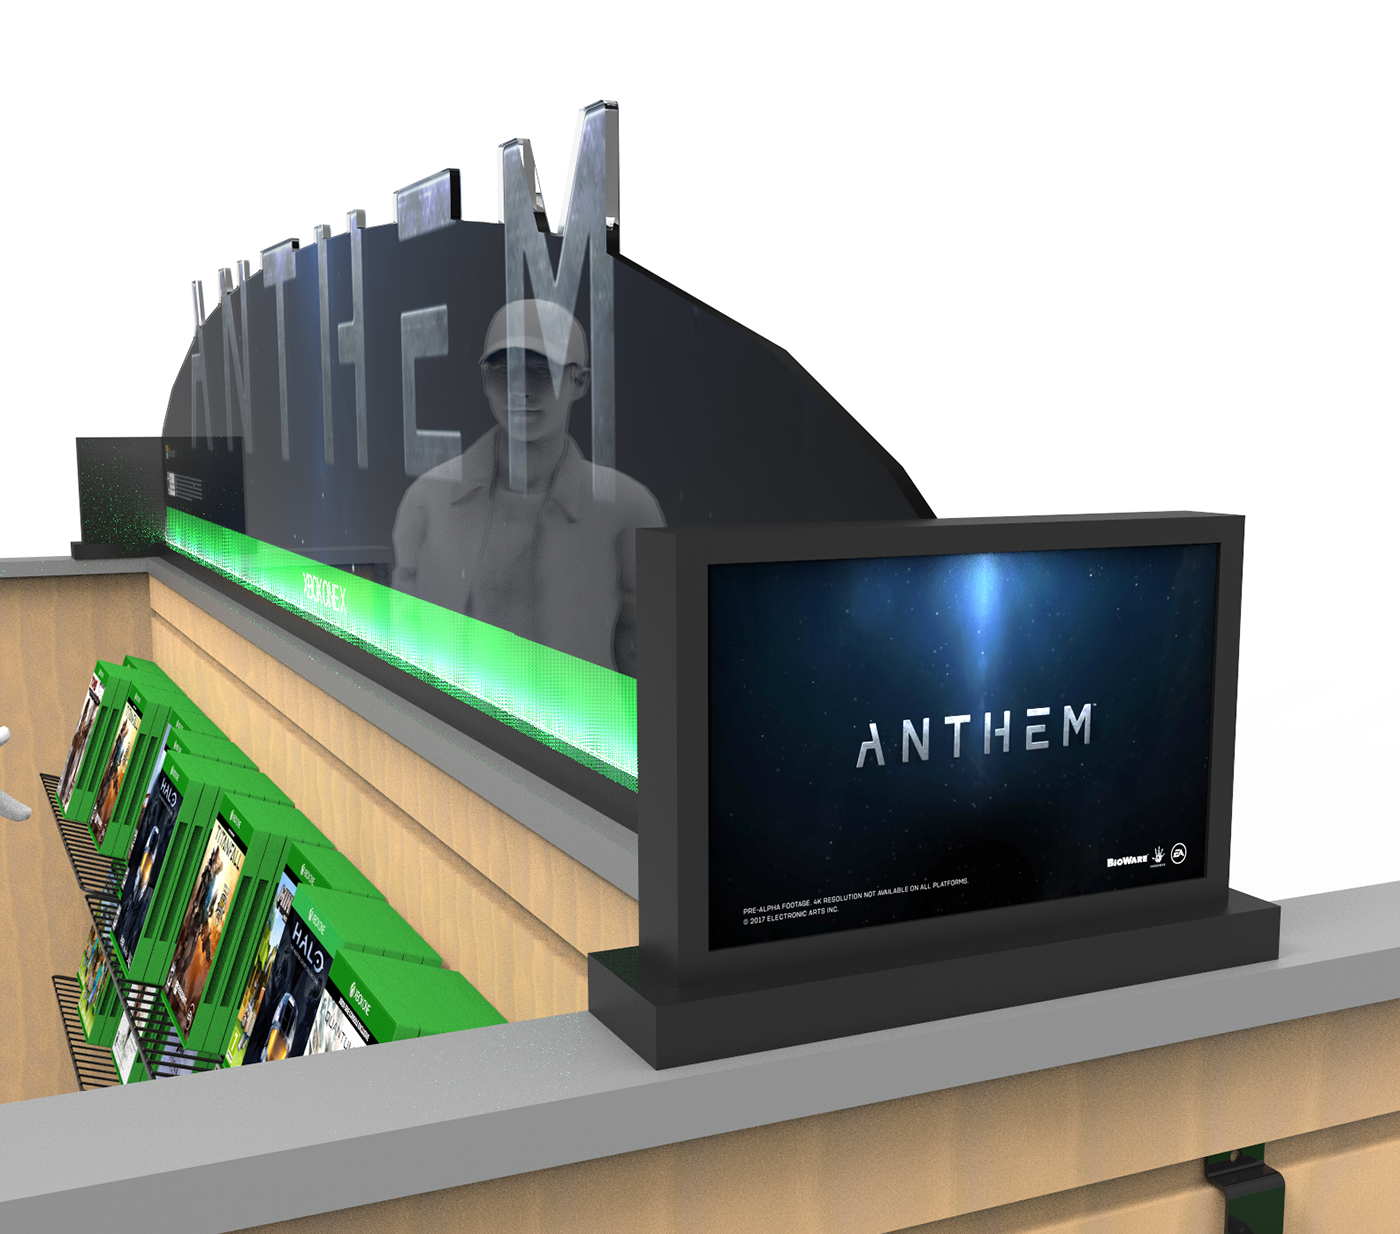 xbox anthem shelf display retail display Gaming Display Games Gaming demo LED Touchscreen Signage